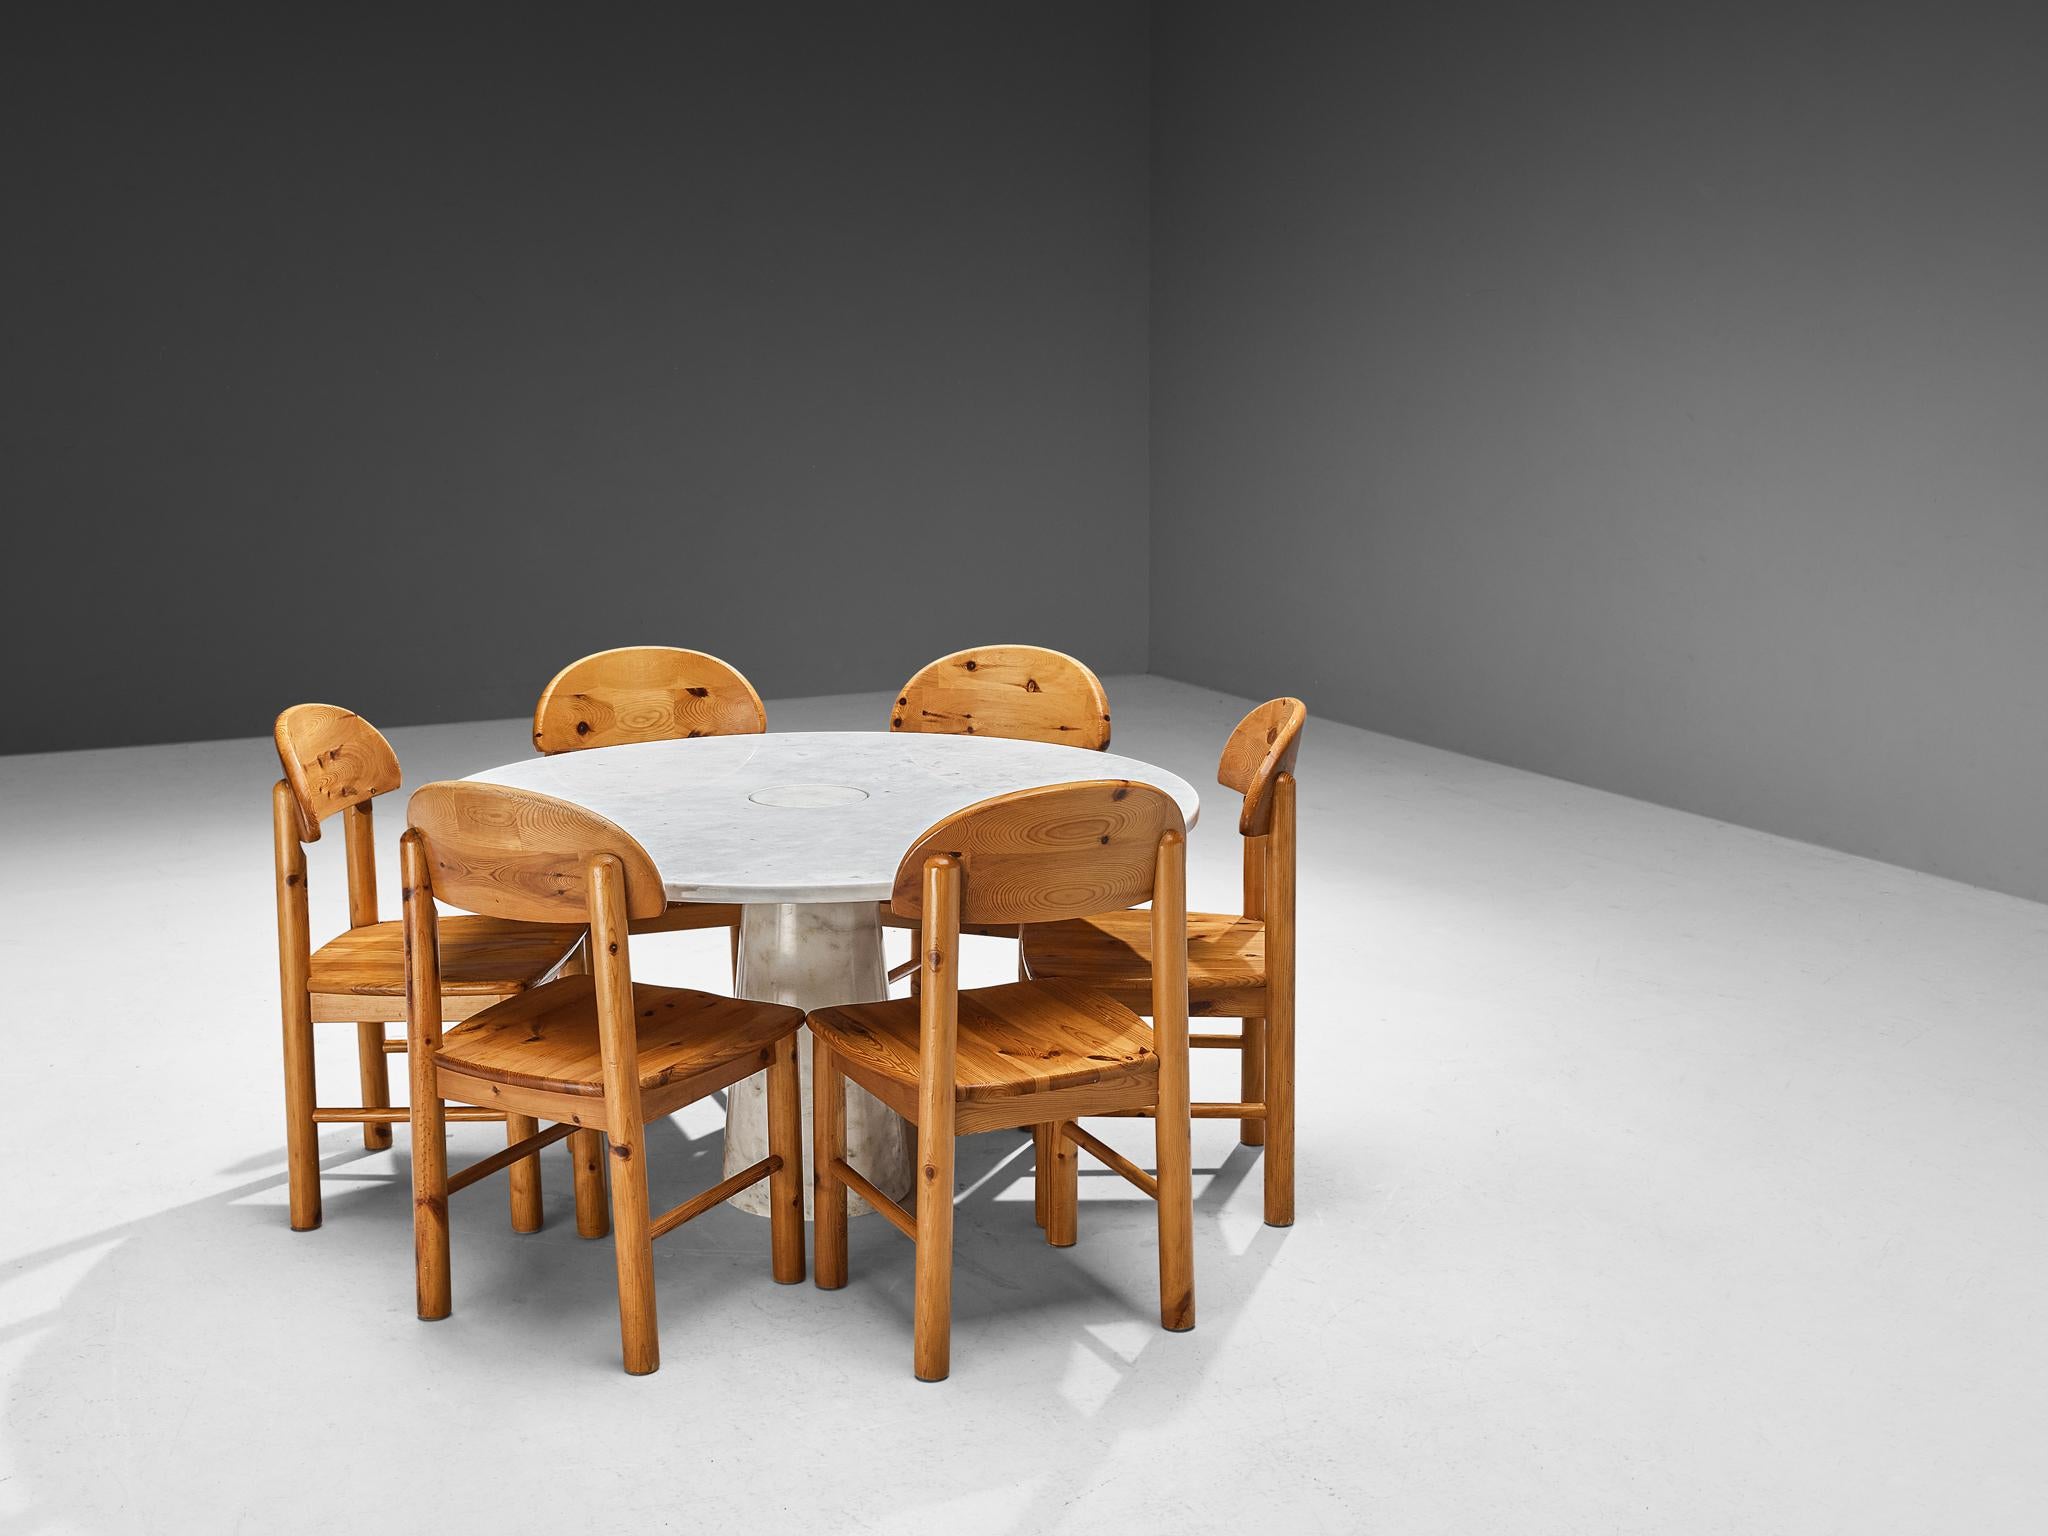 Angelo Mangiarotti für Skipper, Esstisch 'Eros', weißer Marmor, 1970er Jahre, mit Rainer Daumiller Satz von sechs Esszimmerstühlen aus Kiefer

Dieser skulpturale Tisch von Angelo Mangiarotti ist ein gekonntes Beispiel für postmodernes Design. Der